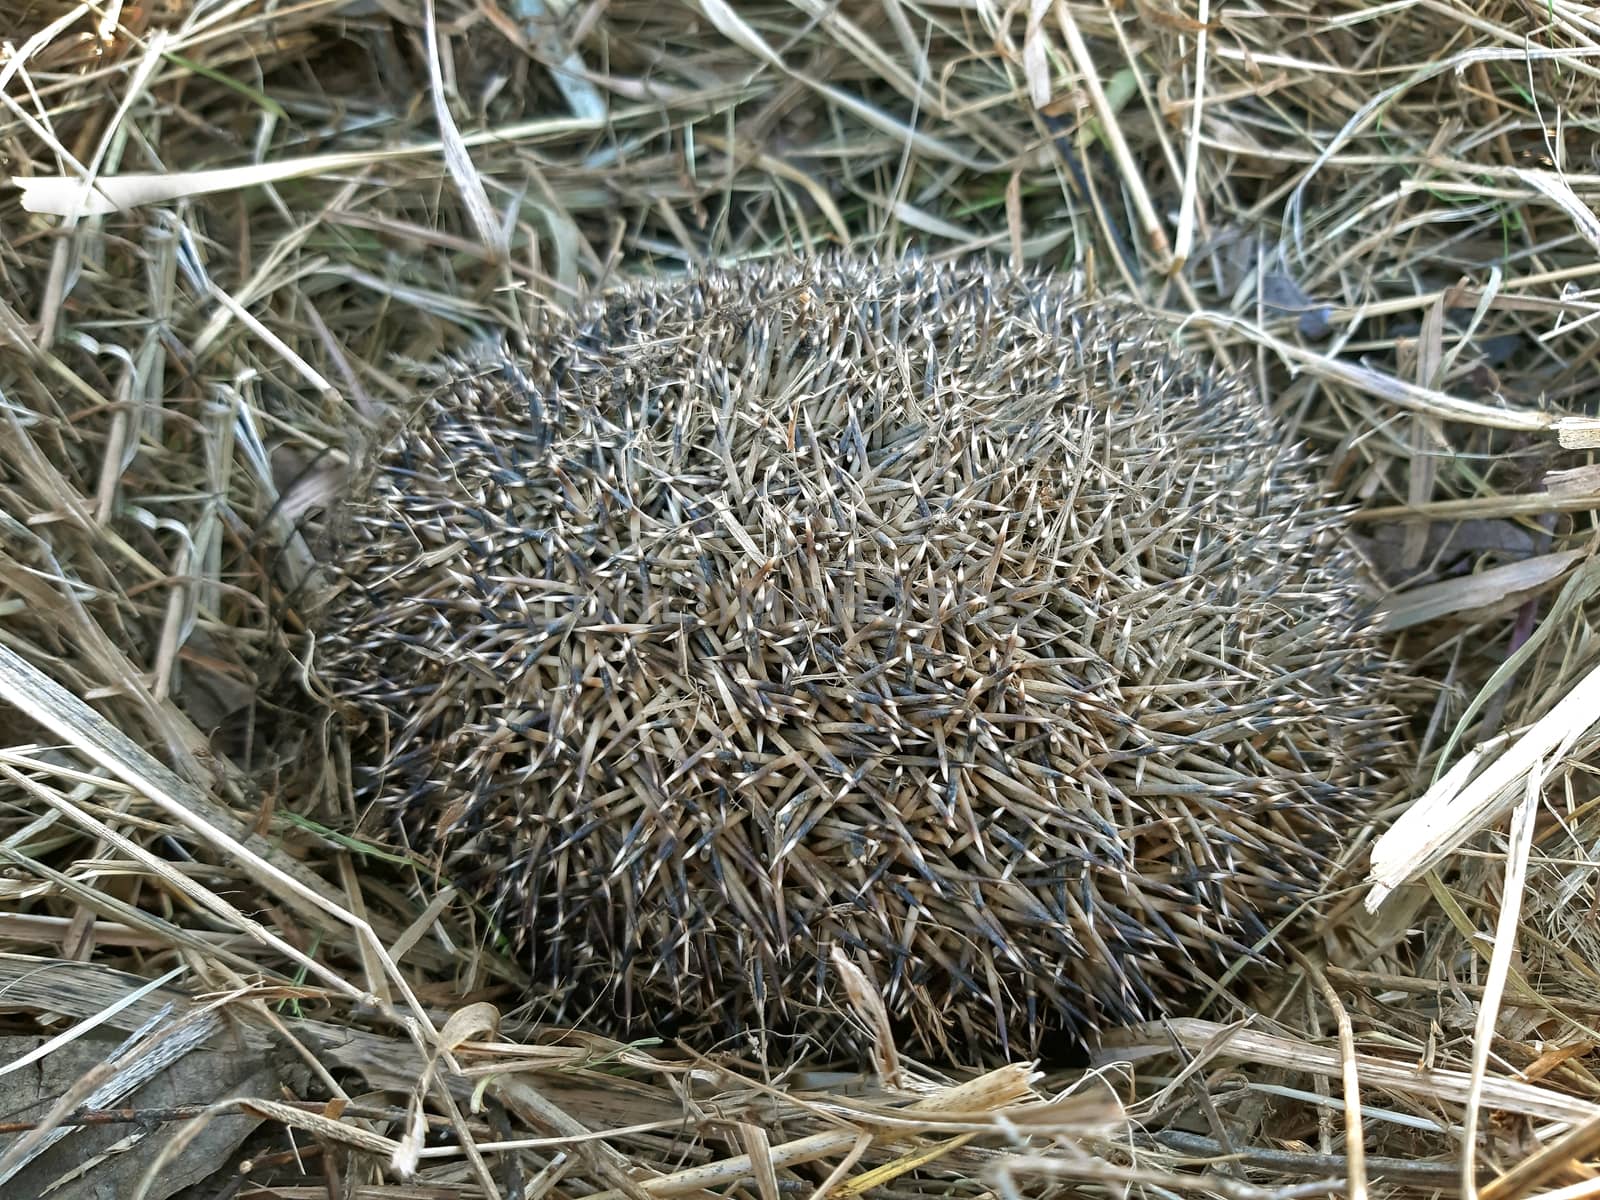 A hedgehog hibernates in dry grass.